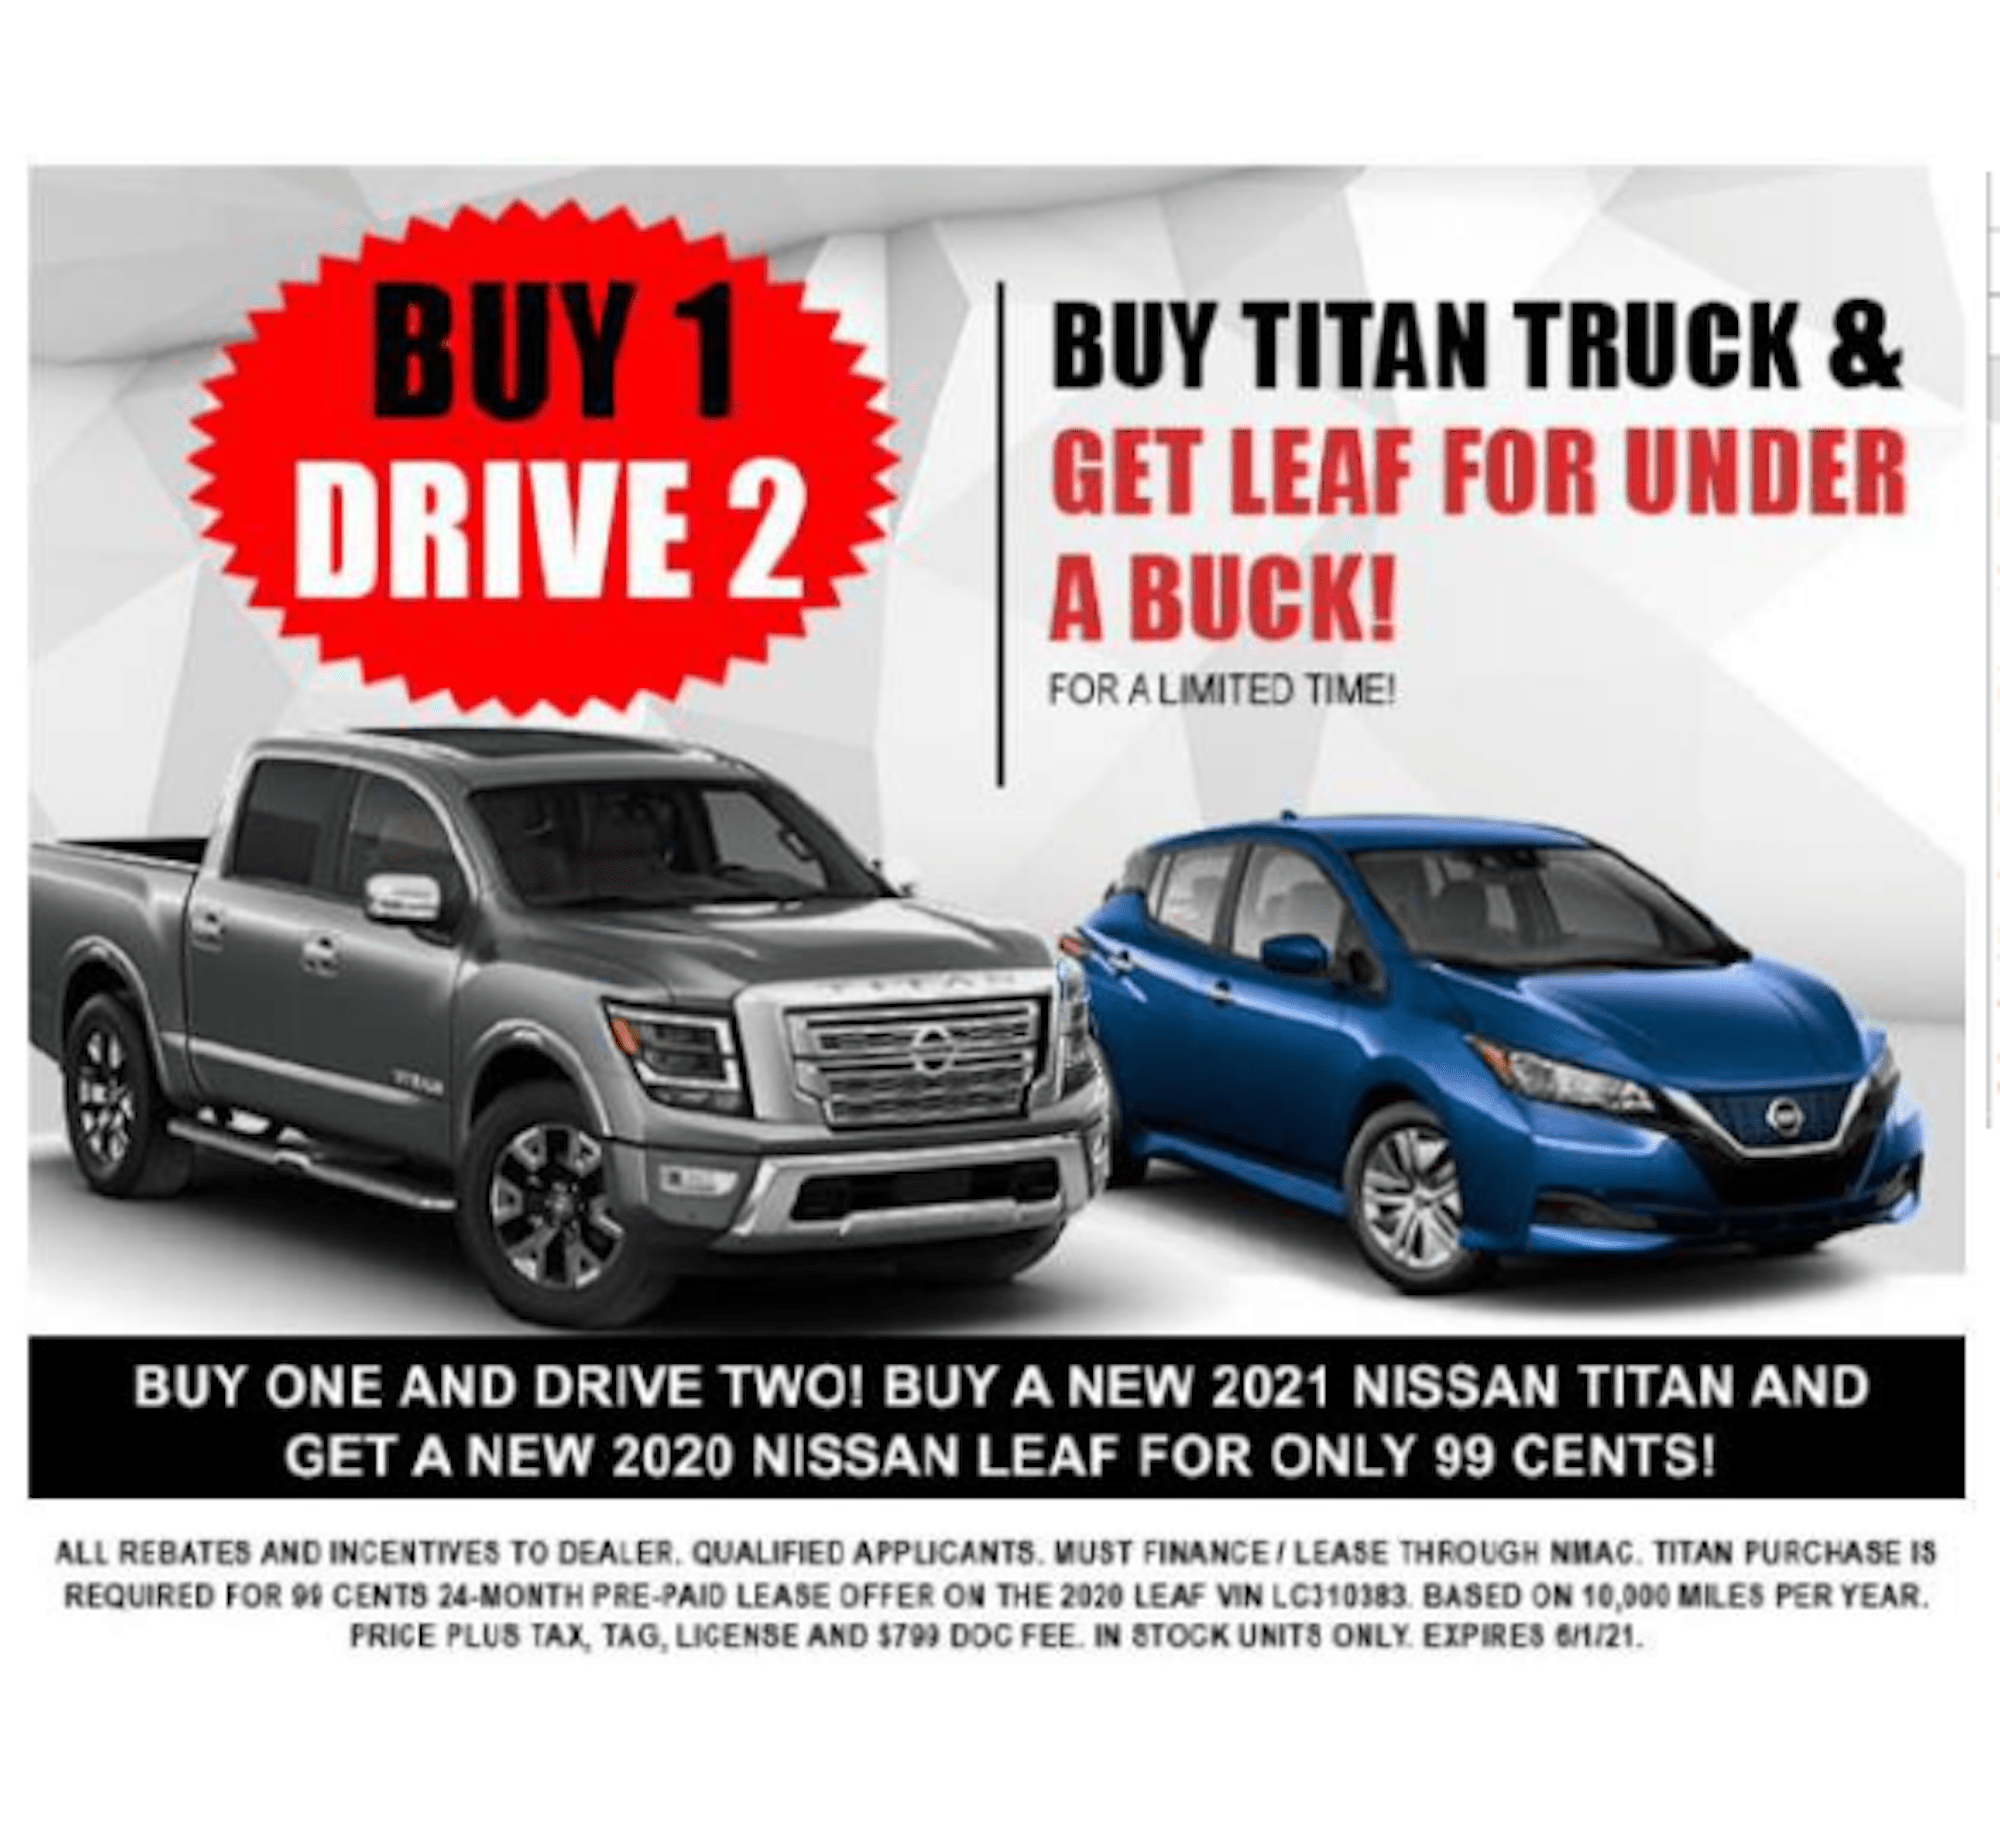 Pērkot Titan, Nissan izplatītājs piedāvā Leaf līzingu par 99 centiem.